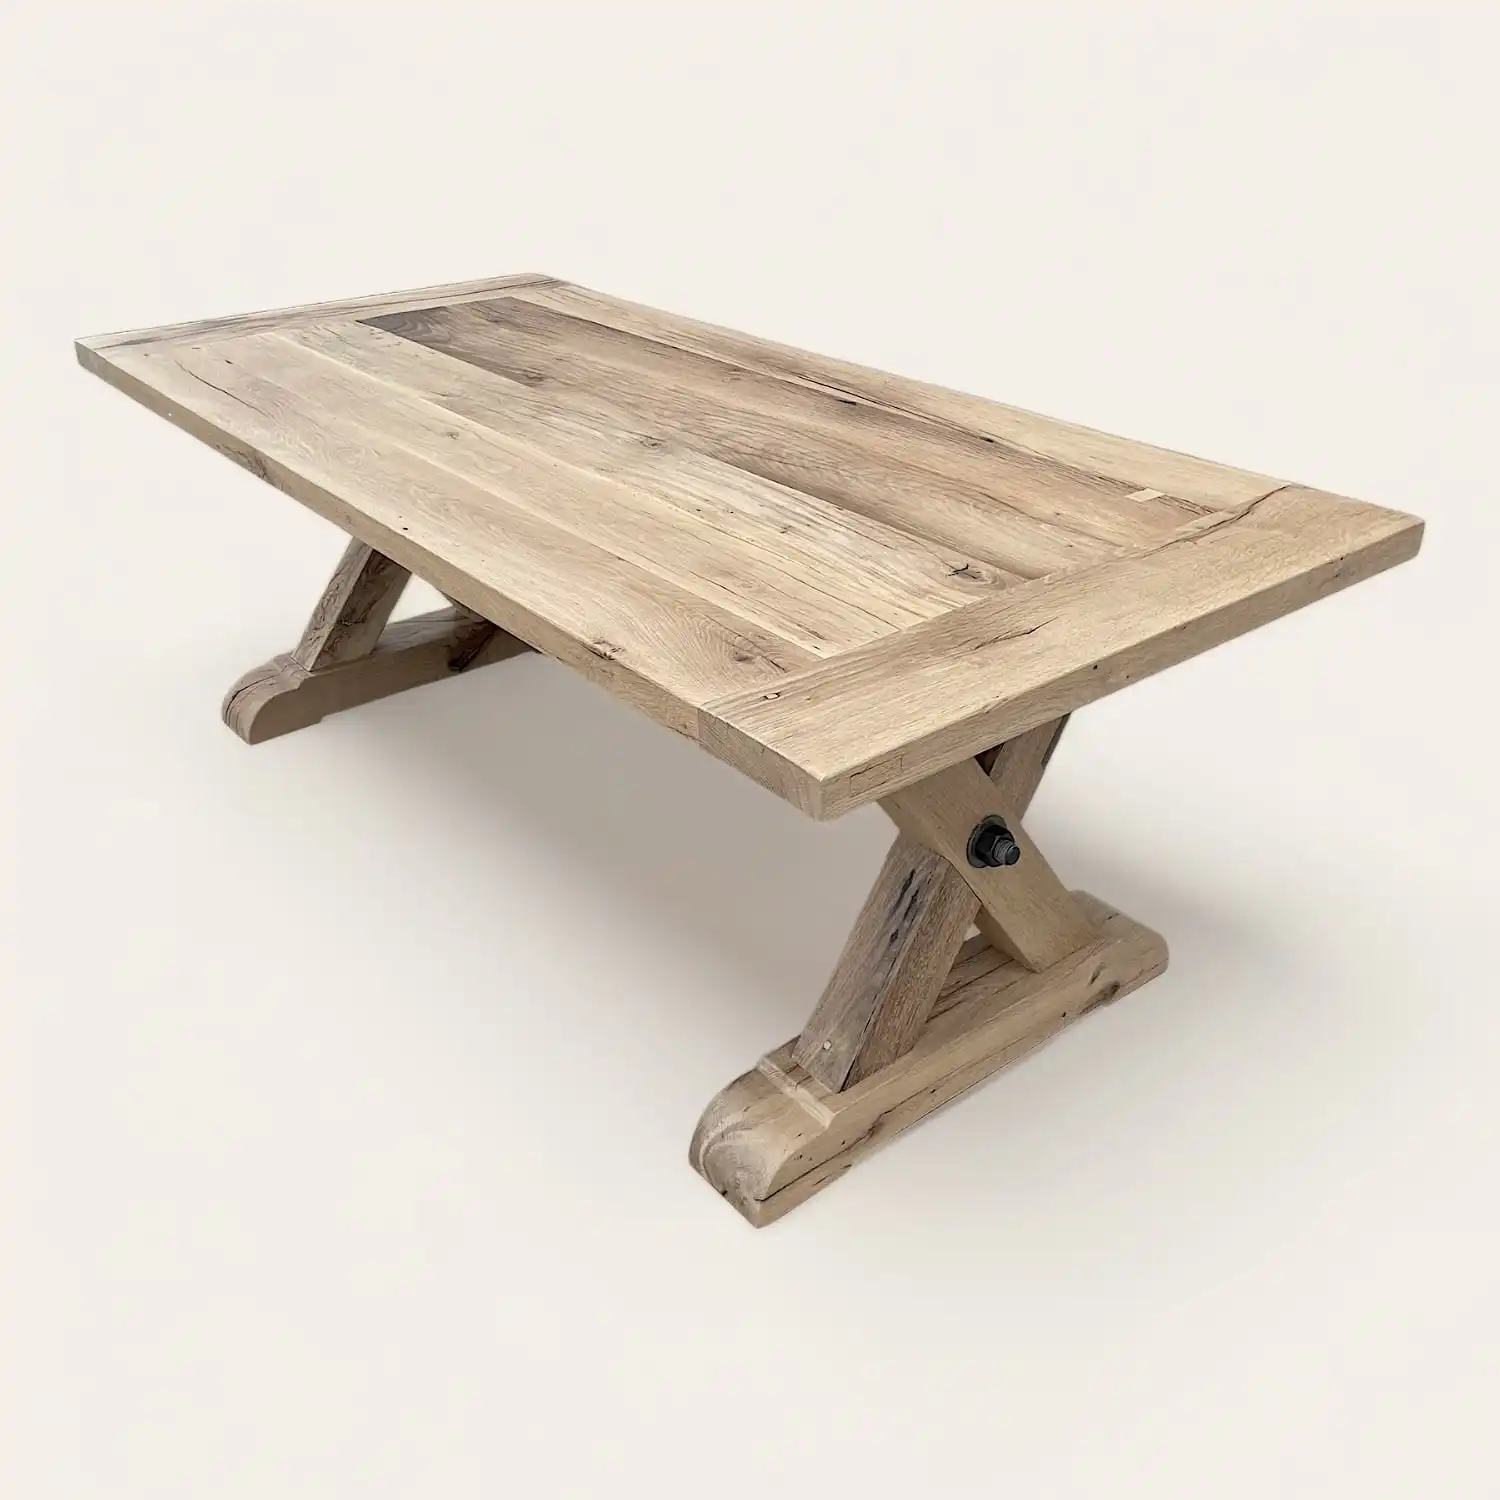  Une table à manger campagnarde en bois avec une base en croix. 